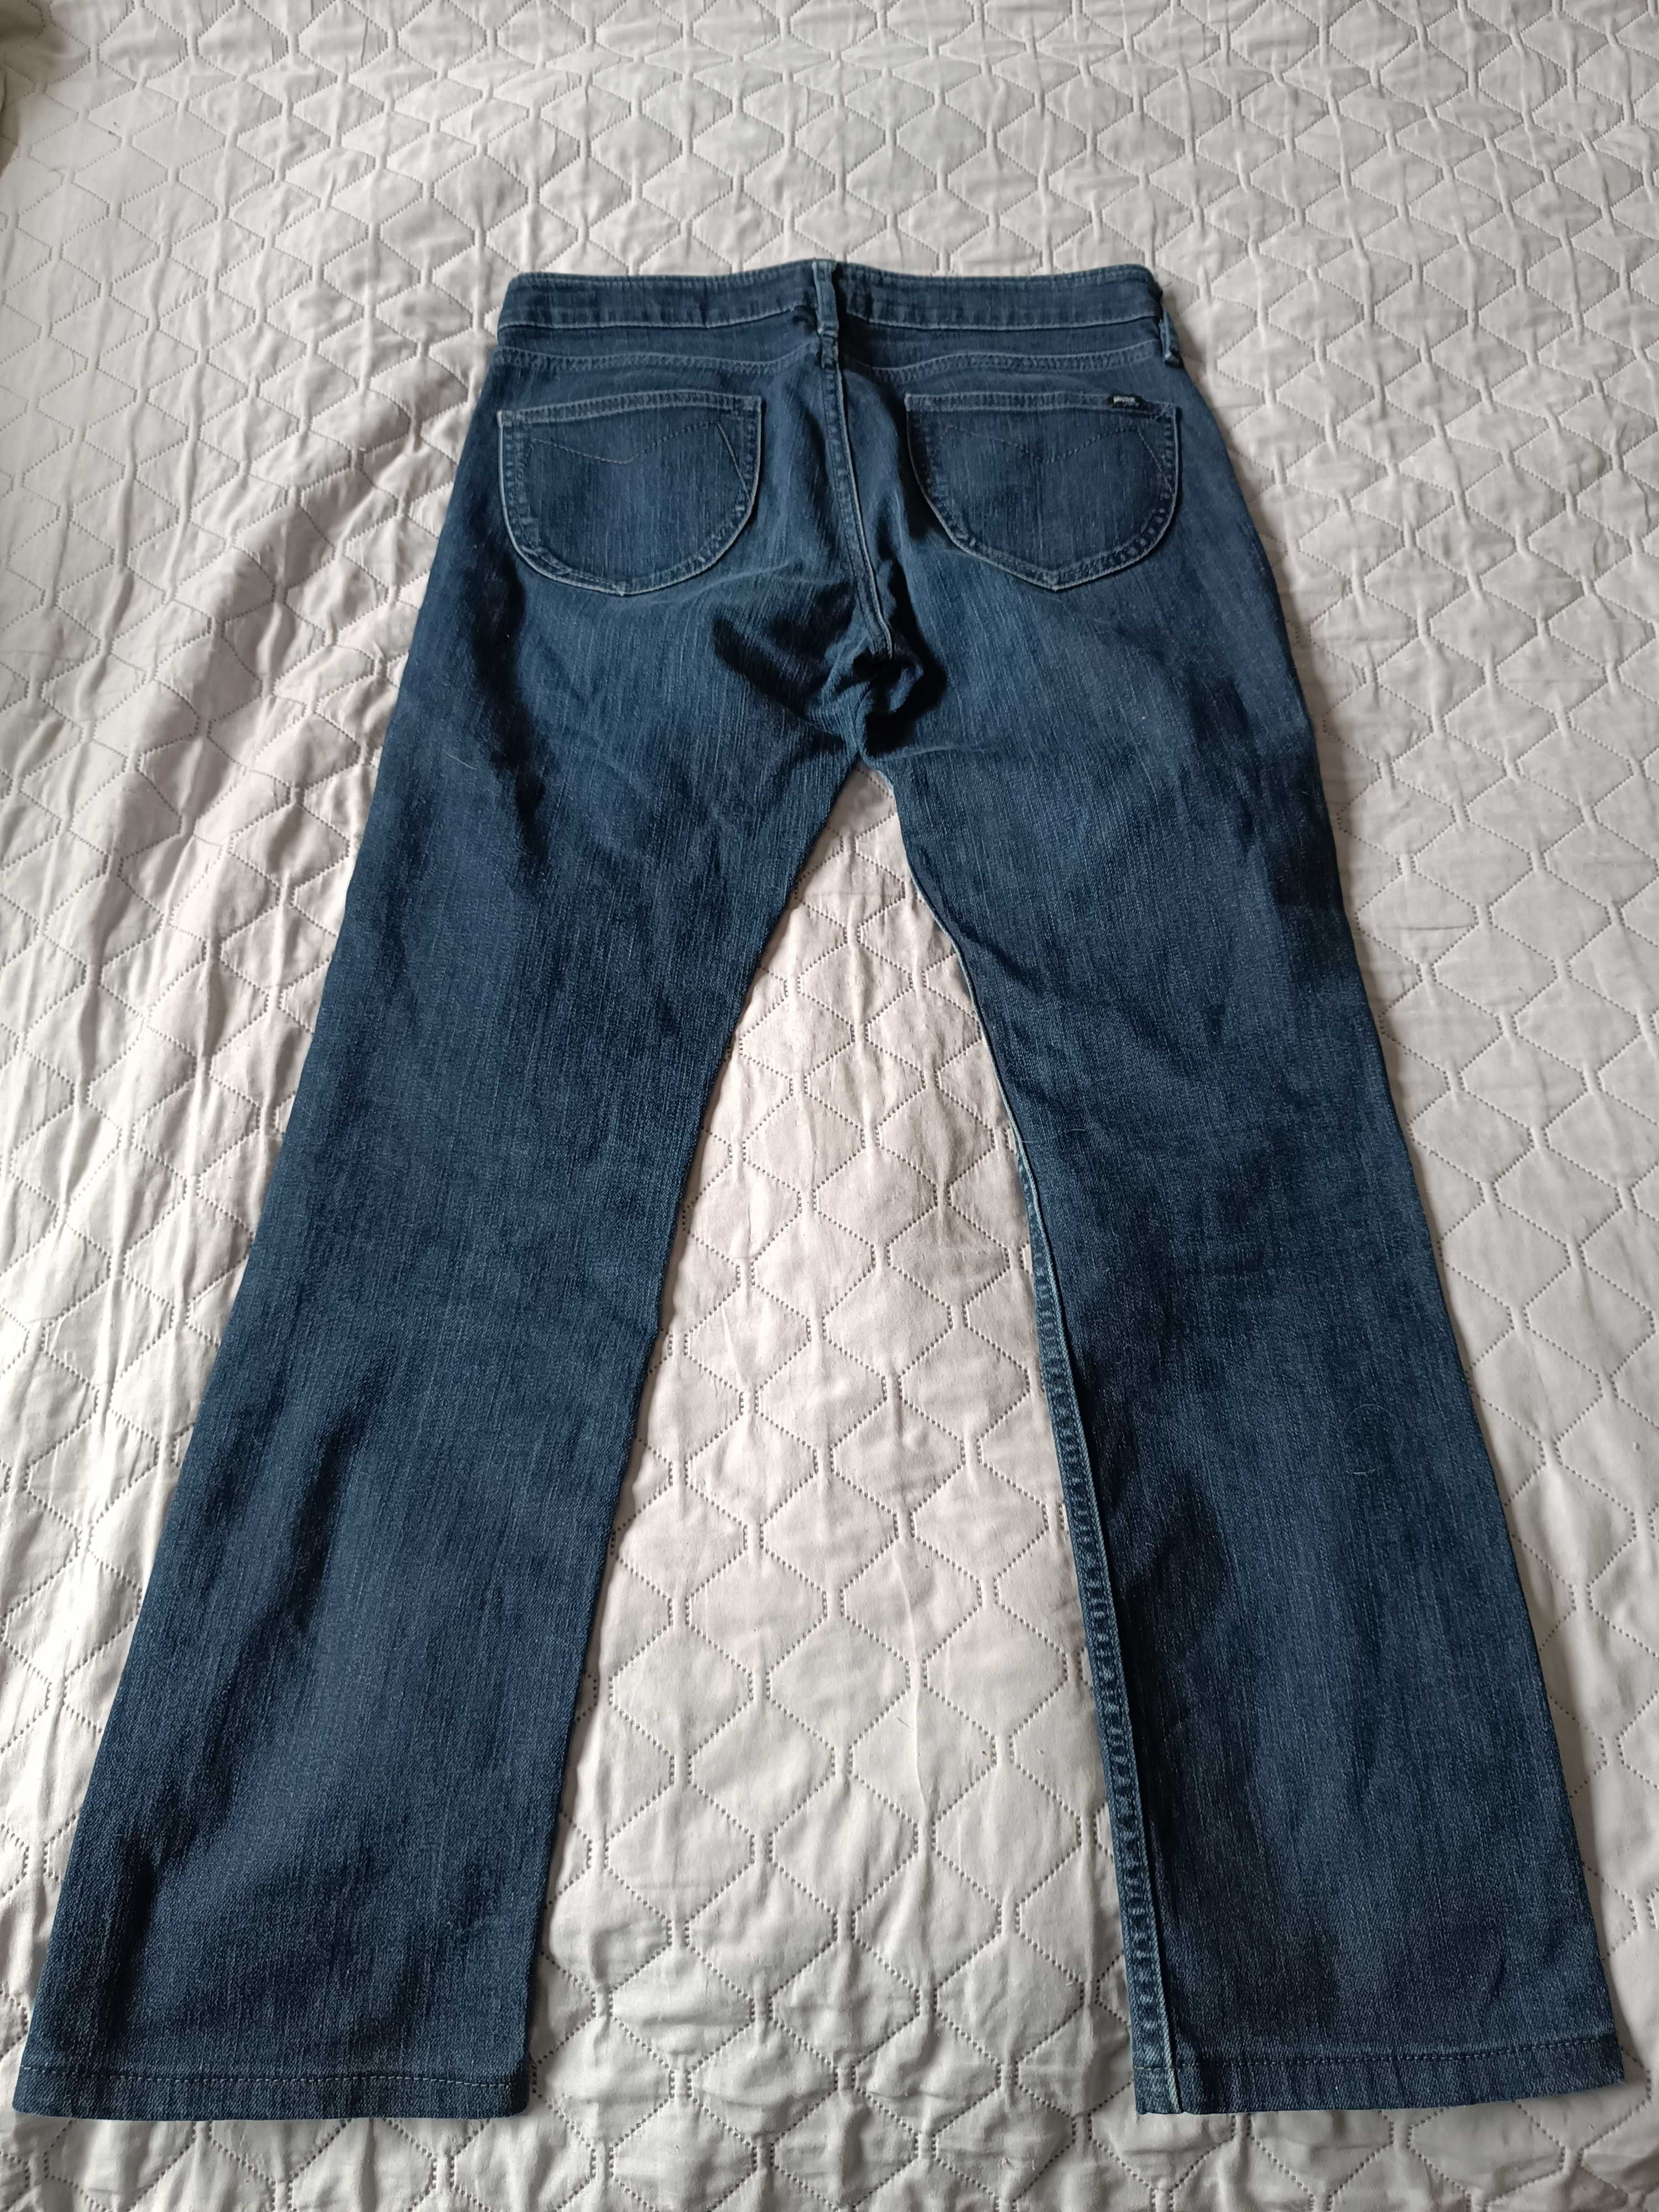 Spodnie Jeans Mexx Damskie model Flirt rozmiar 28